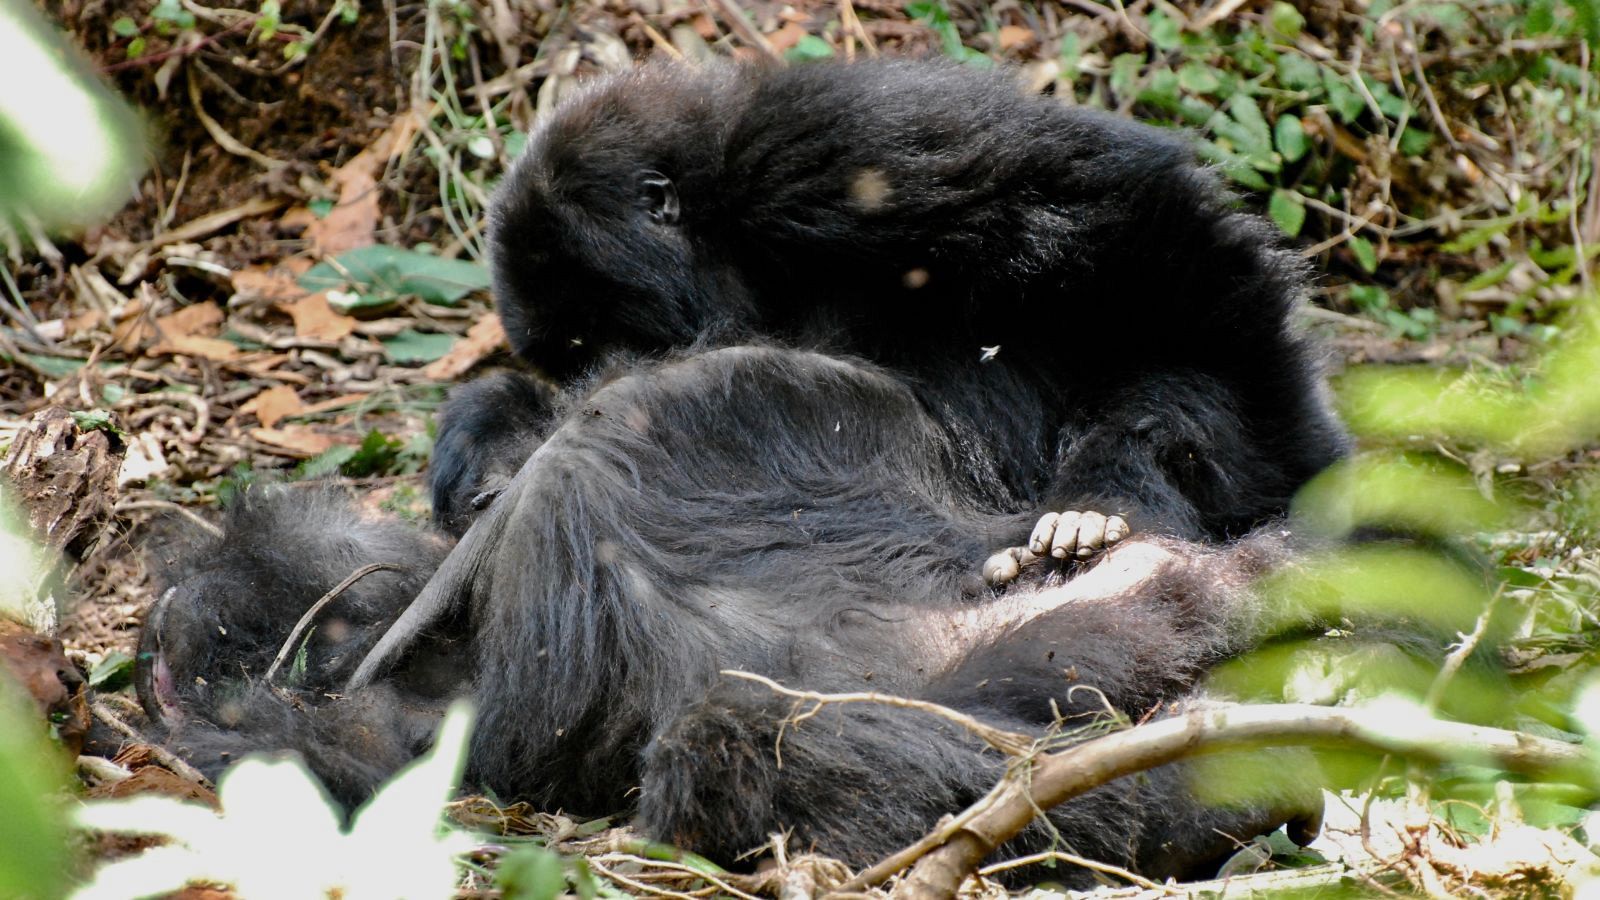 Un gorila permanece sentado cerca de otro fallecido, en señal de duelo.